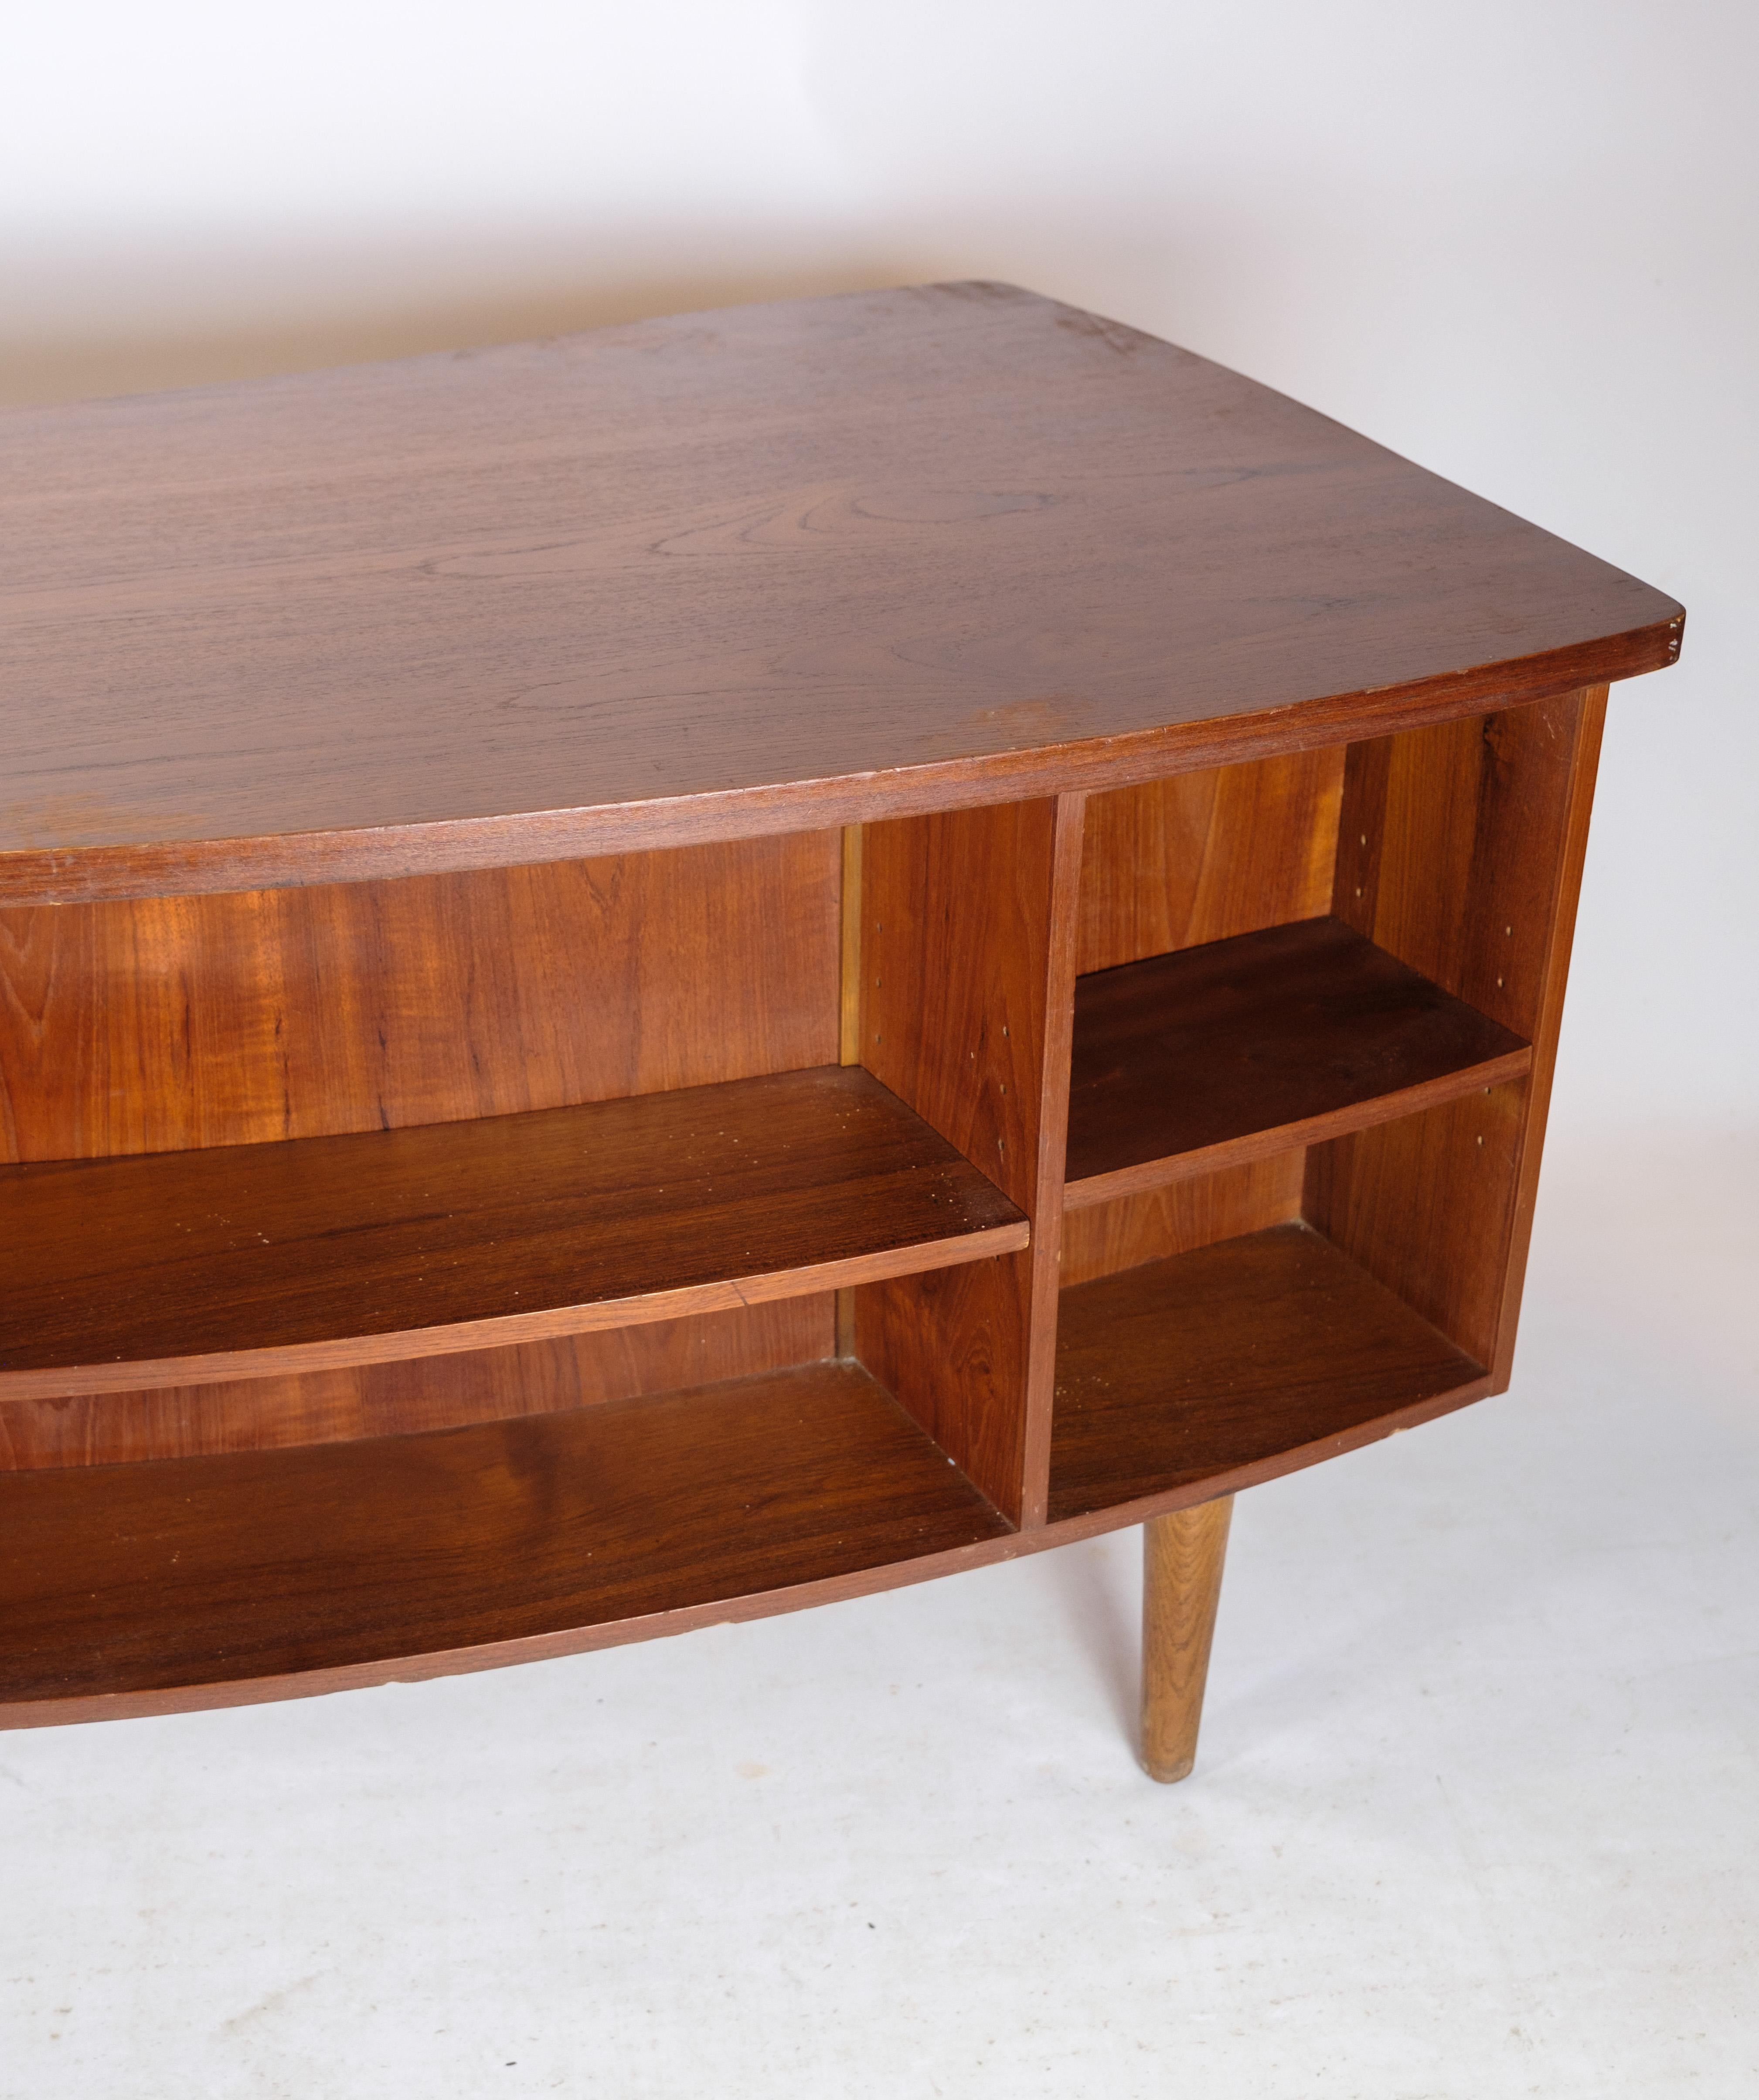 Desk in Teak wood model 54 by Kai Kristiansen and Feldballes furniture from 1954 For Sale 2